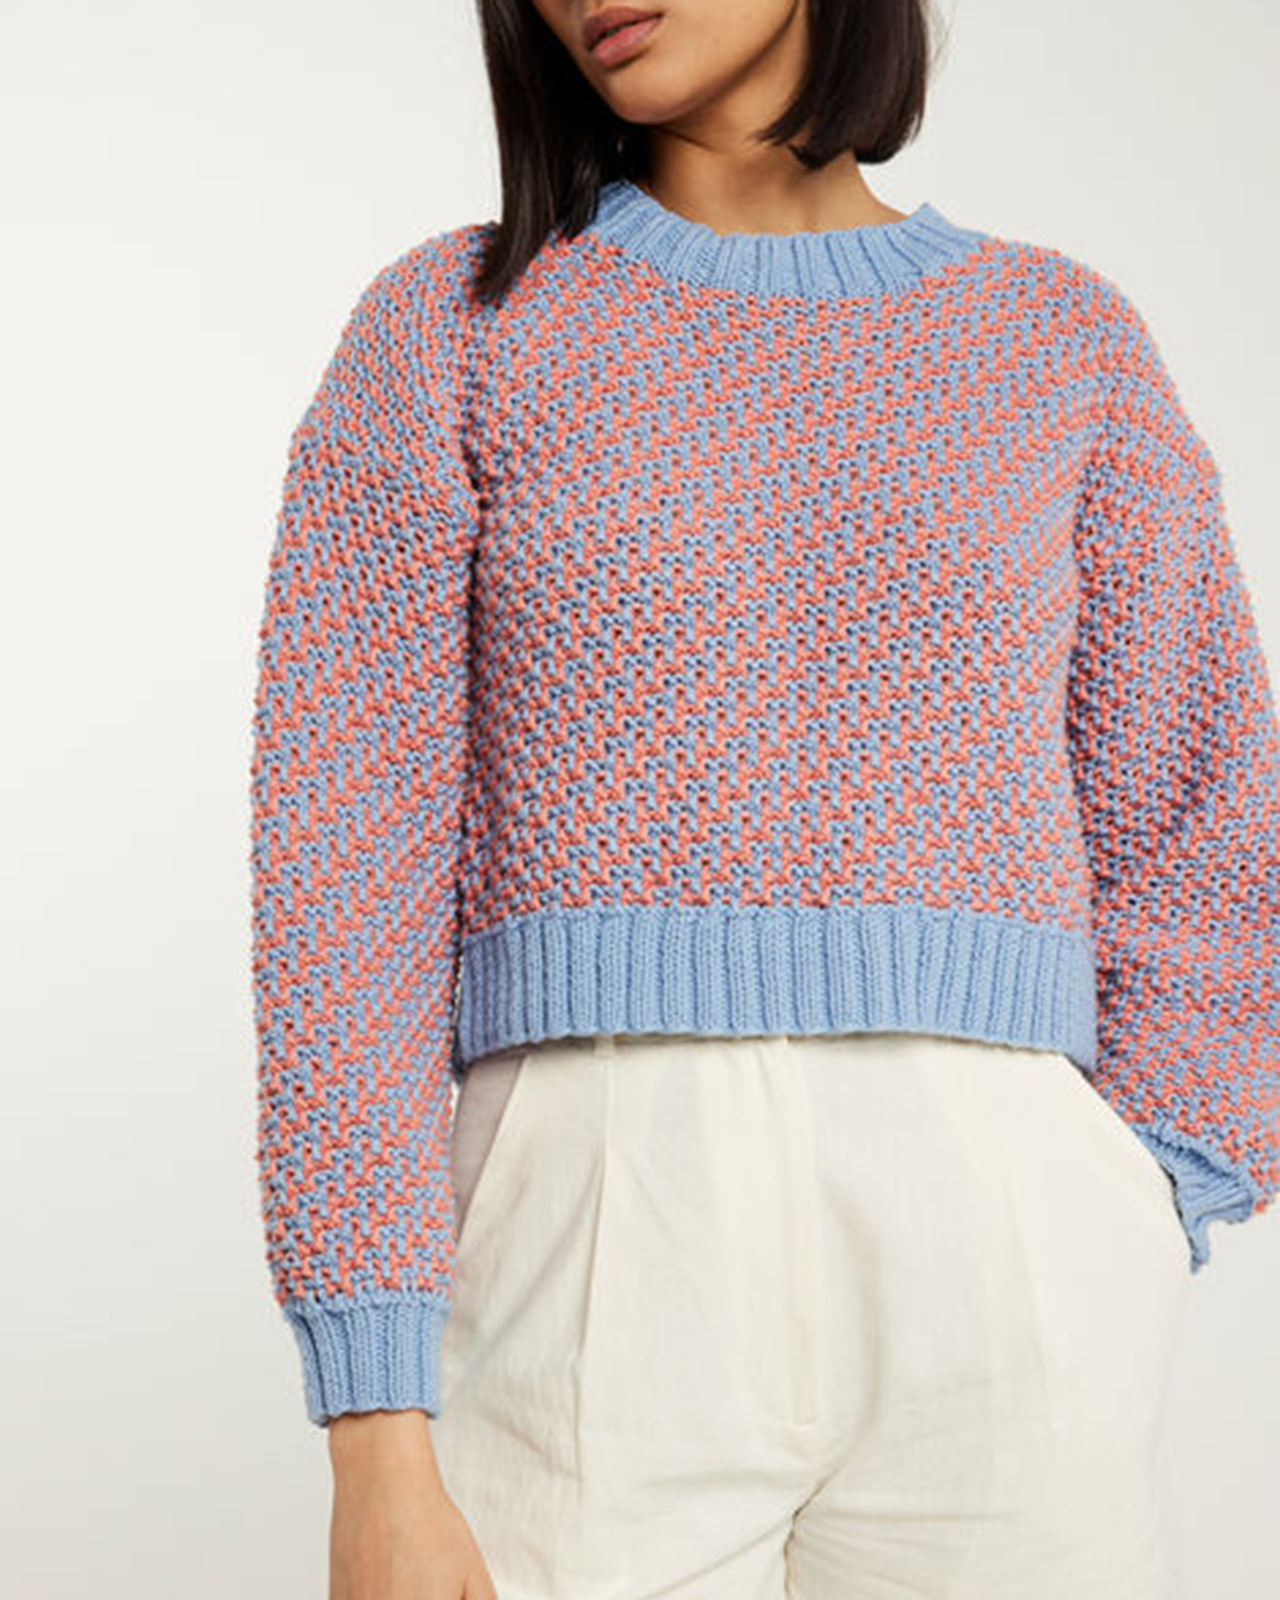 【ALANA SWEATER / PATTERN SET】モザイク模様セーターの編み物パターン